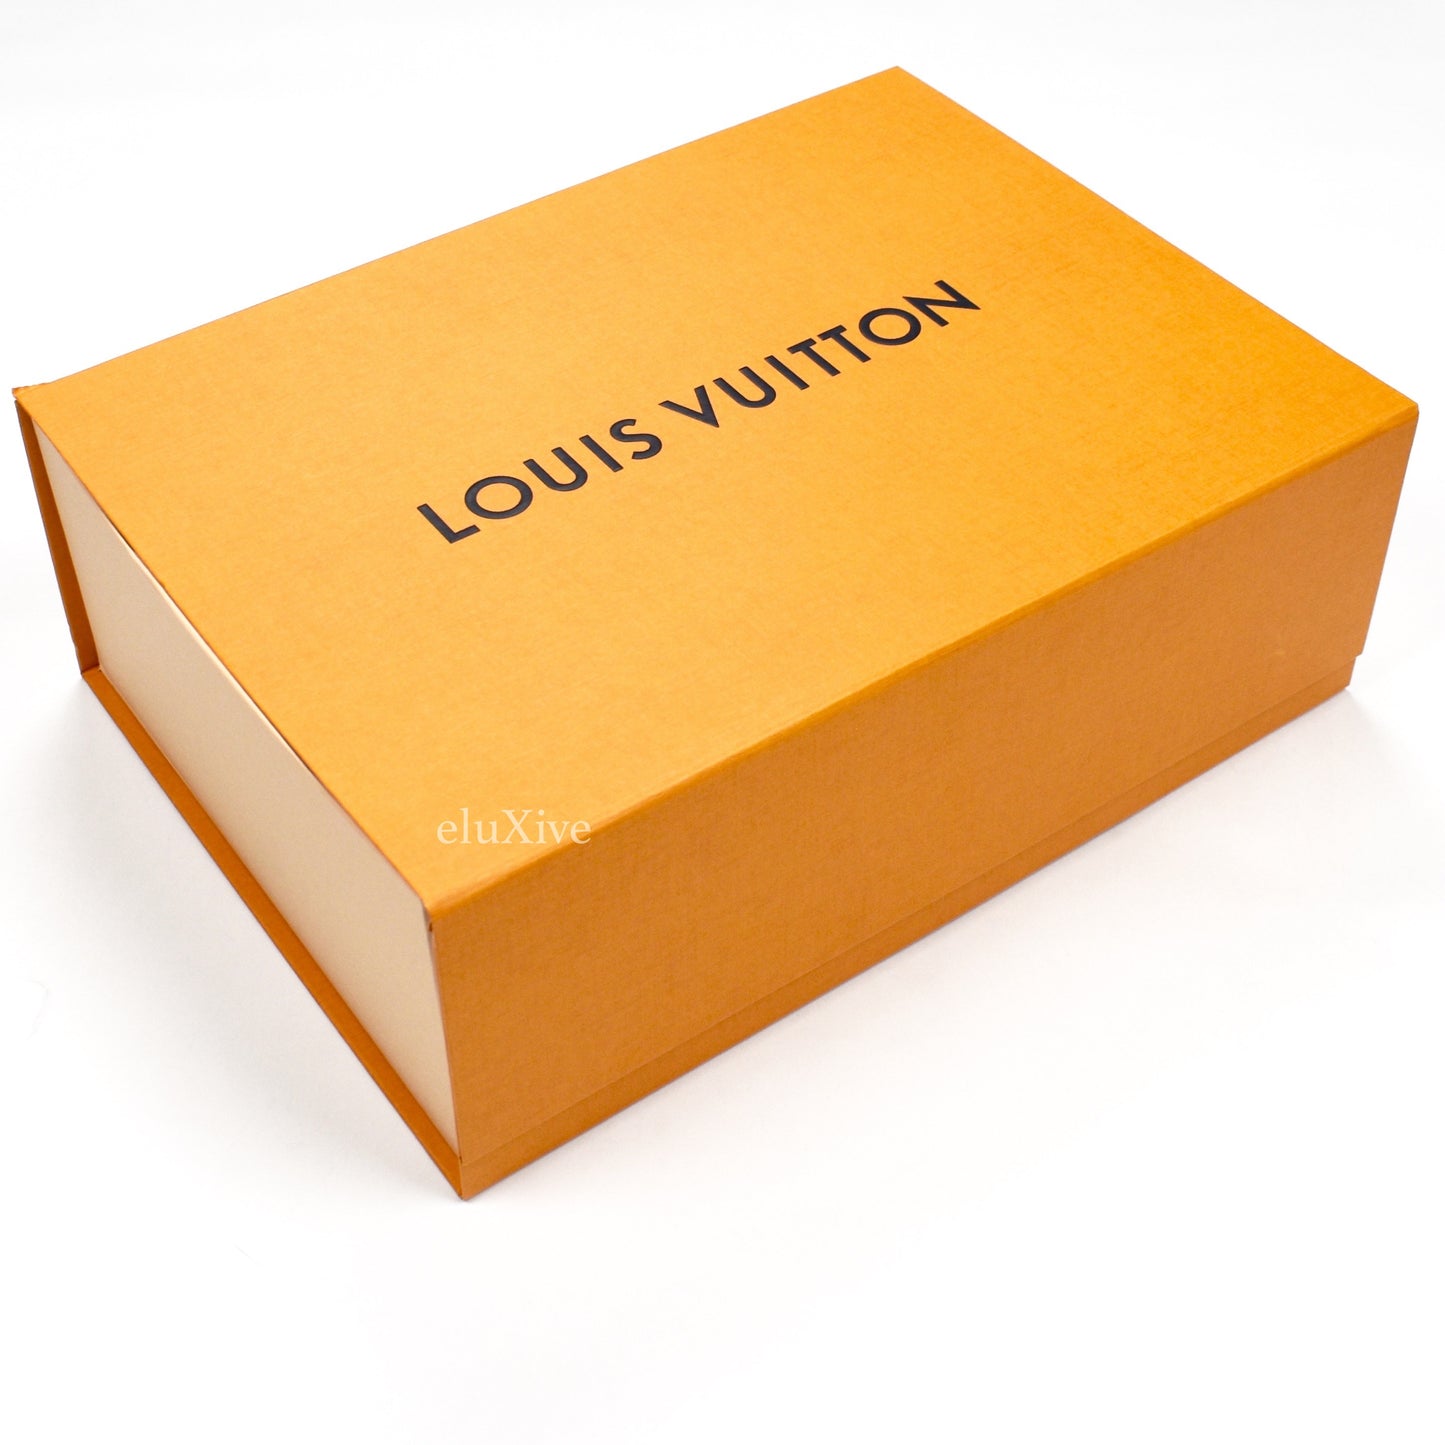 Louis Vuitton - Monogram Denim Woven Bucket Hat (Orange)